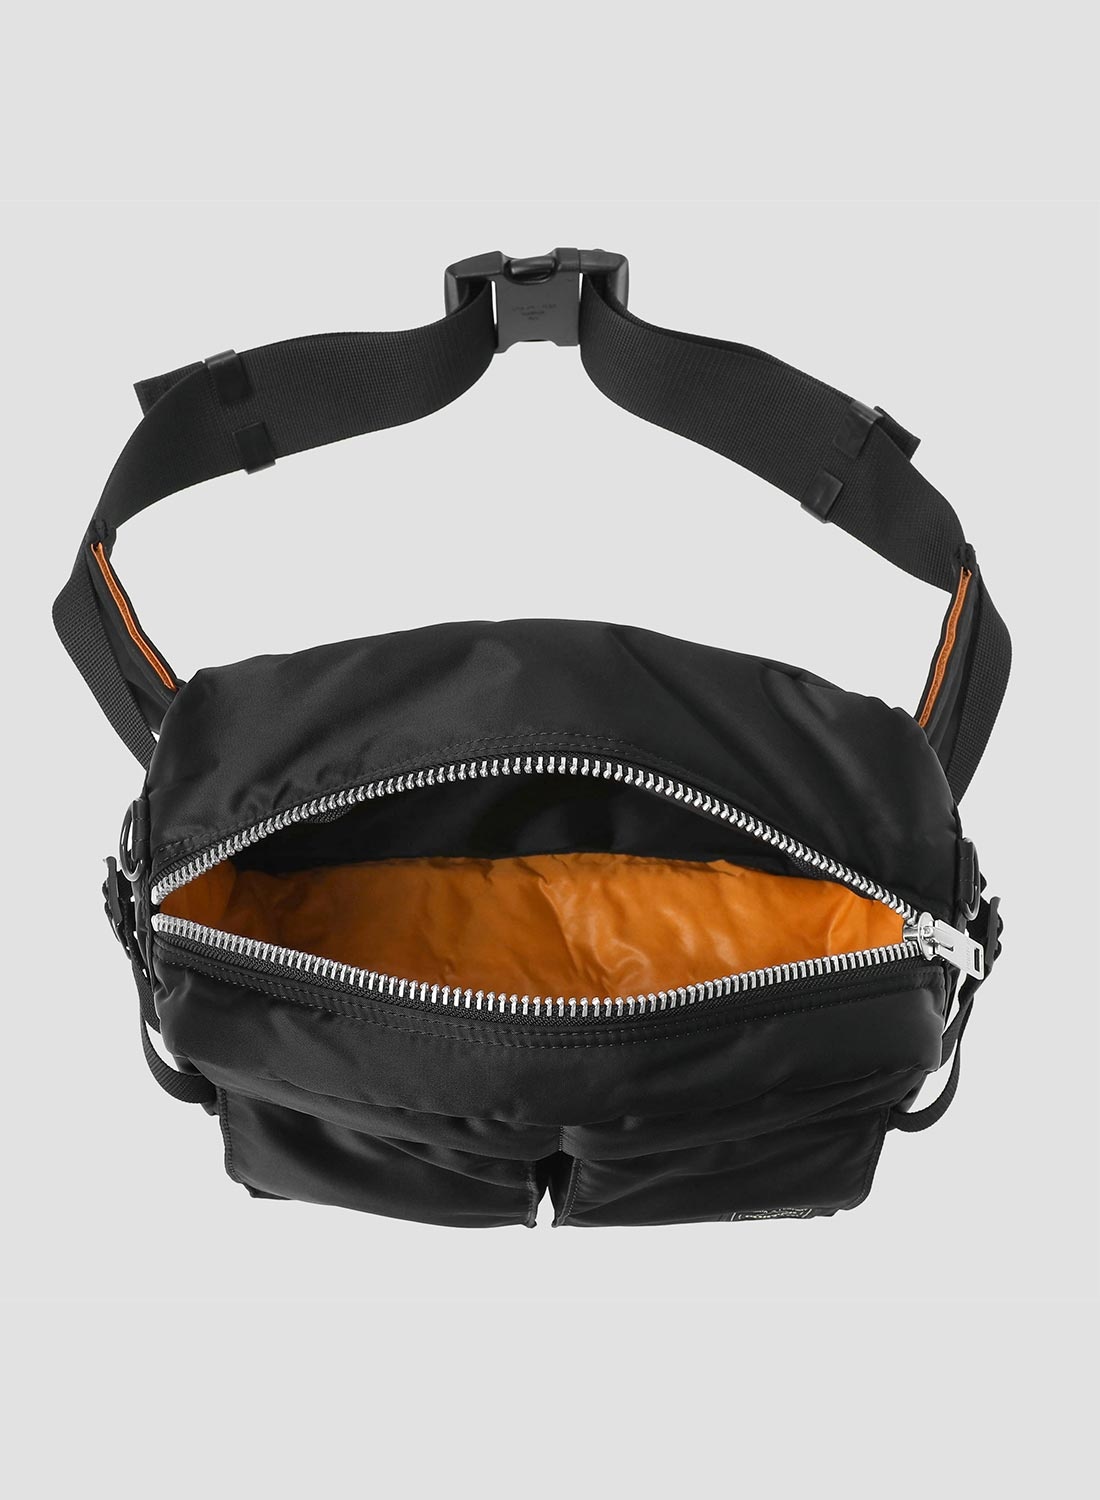 Porter-Yoshida & Co Tanker Waist Bag in Black - 2